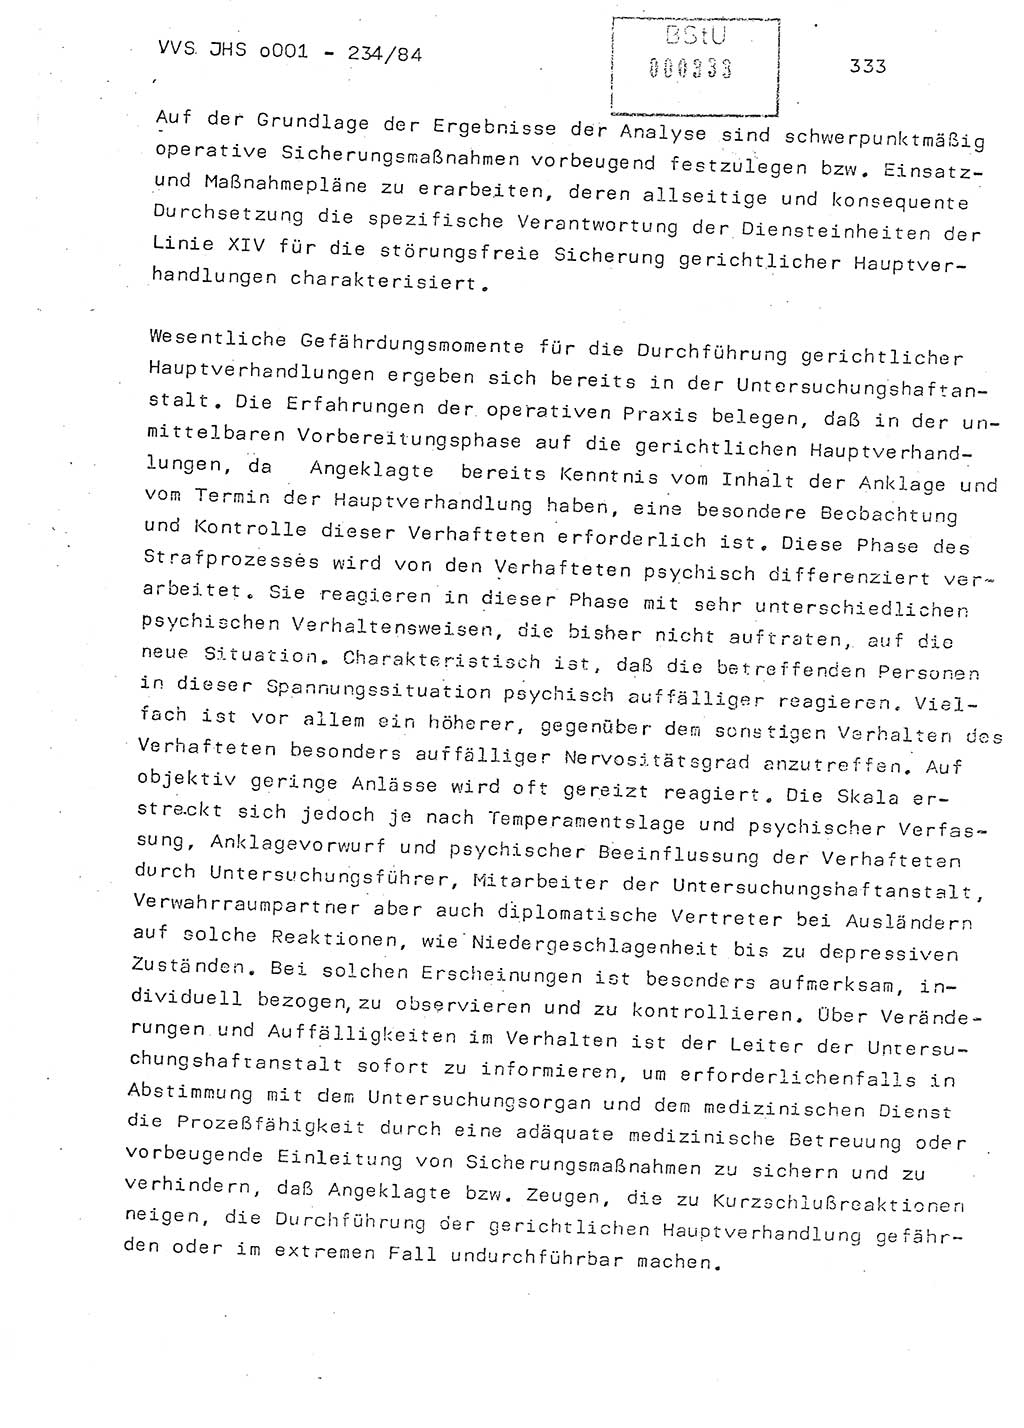 Dissertation Oberst Siegfried Rataizick (Abt. ⅩⅣ), Oberstleutnant Volkmar Heinz (Abt. ⅩⅣ), Oberstleutnant Werner Stein (HA Ⅸ), Hauptmann Heinz Conrad (JHS), Ministerium für Staatssicherheit (MfS) [Deutsche Demokratische Republik (DDR)], Juristische Hochschule (JHS), Vertrauliche Verschlußsache (VVS) o001-234/84, Potsdam 1984, Seite 333 (Diss. MfS DDR JHS VVS o001-234/84 1984, S. 333)